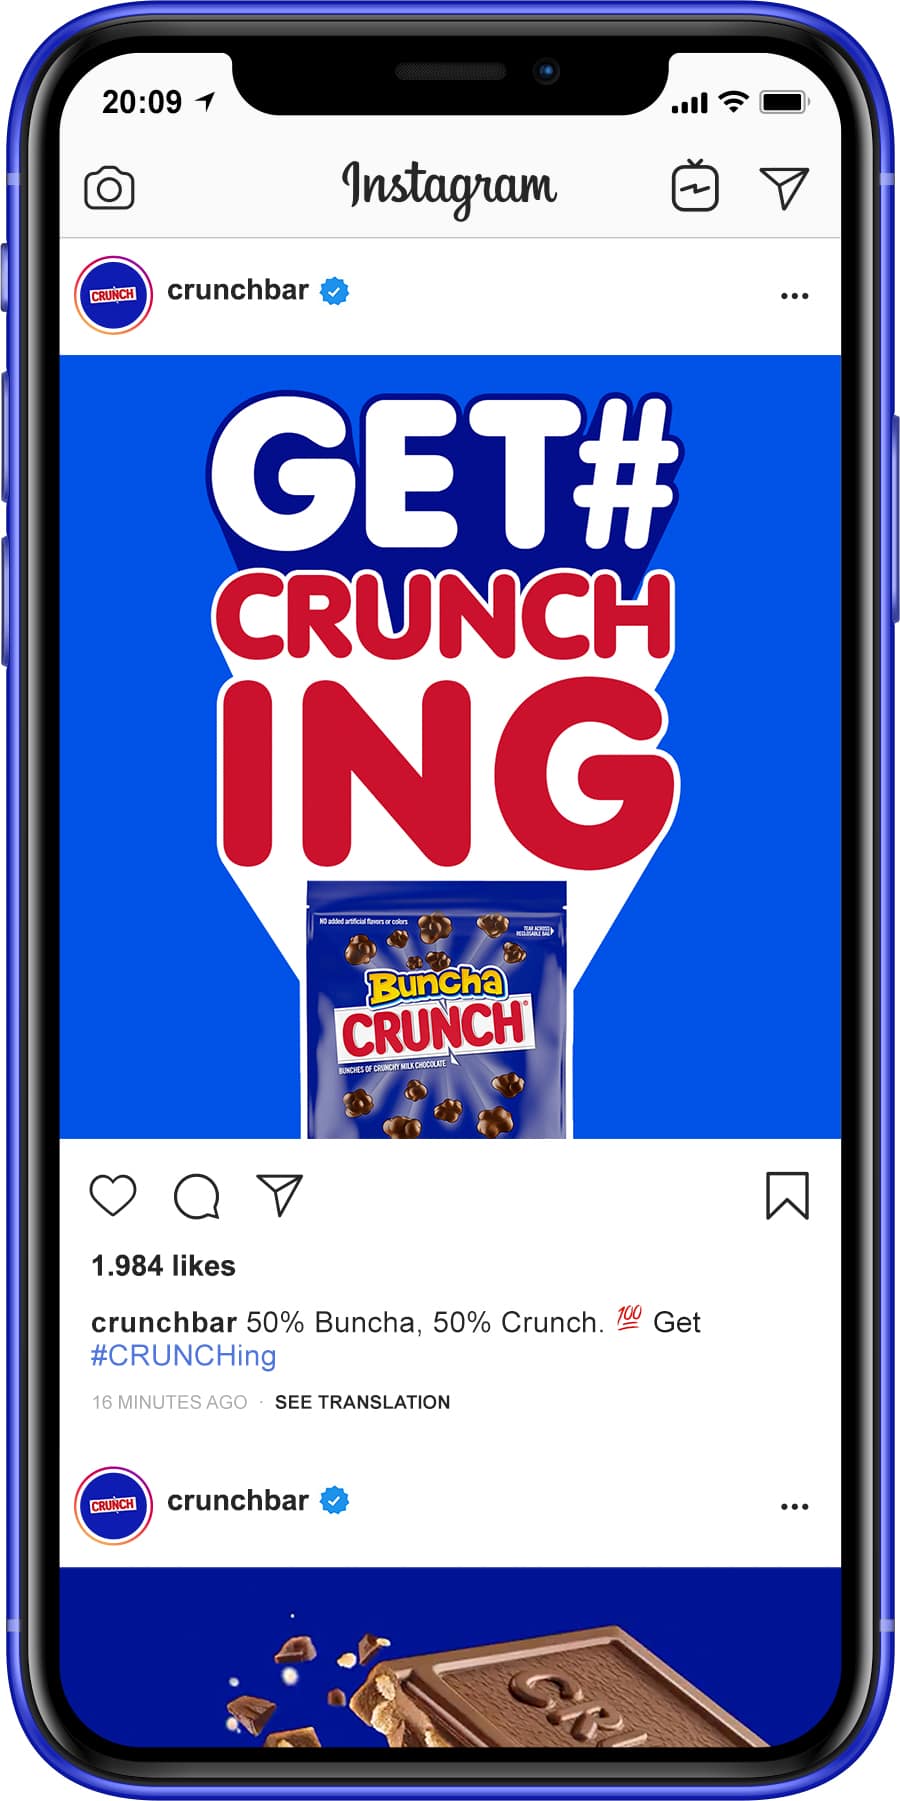 get #crunching image